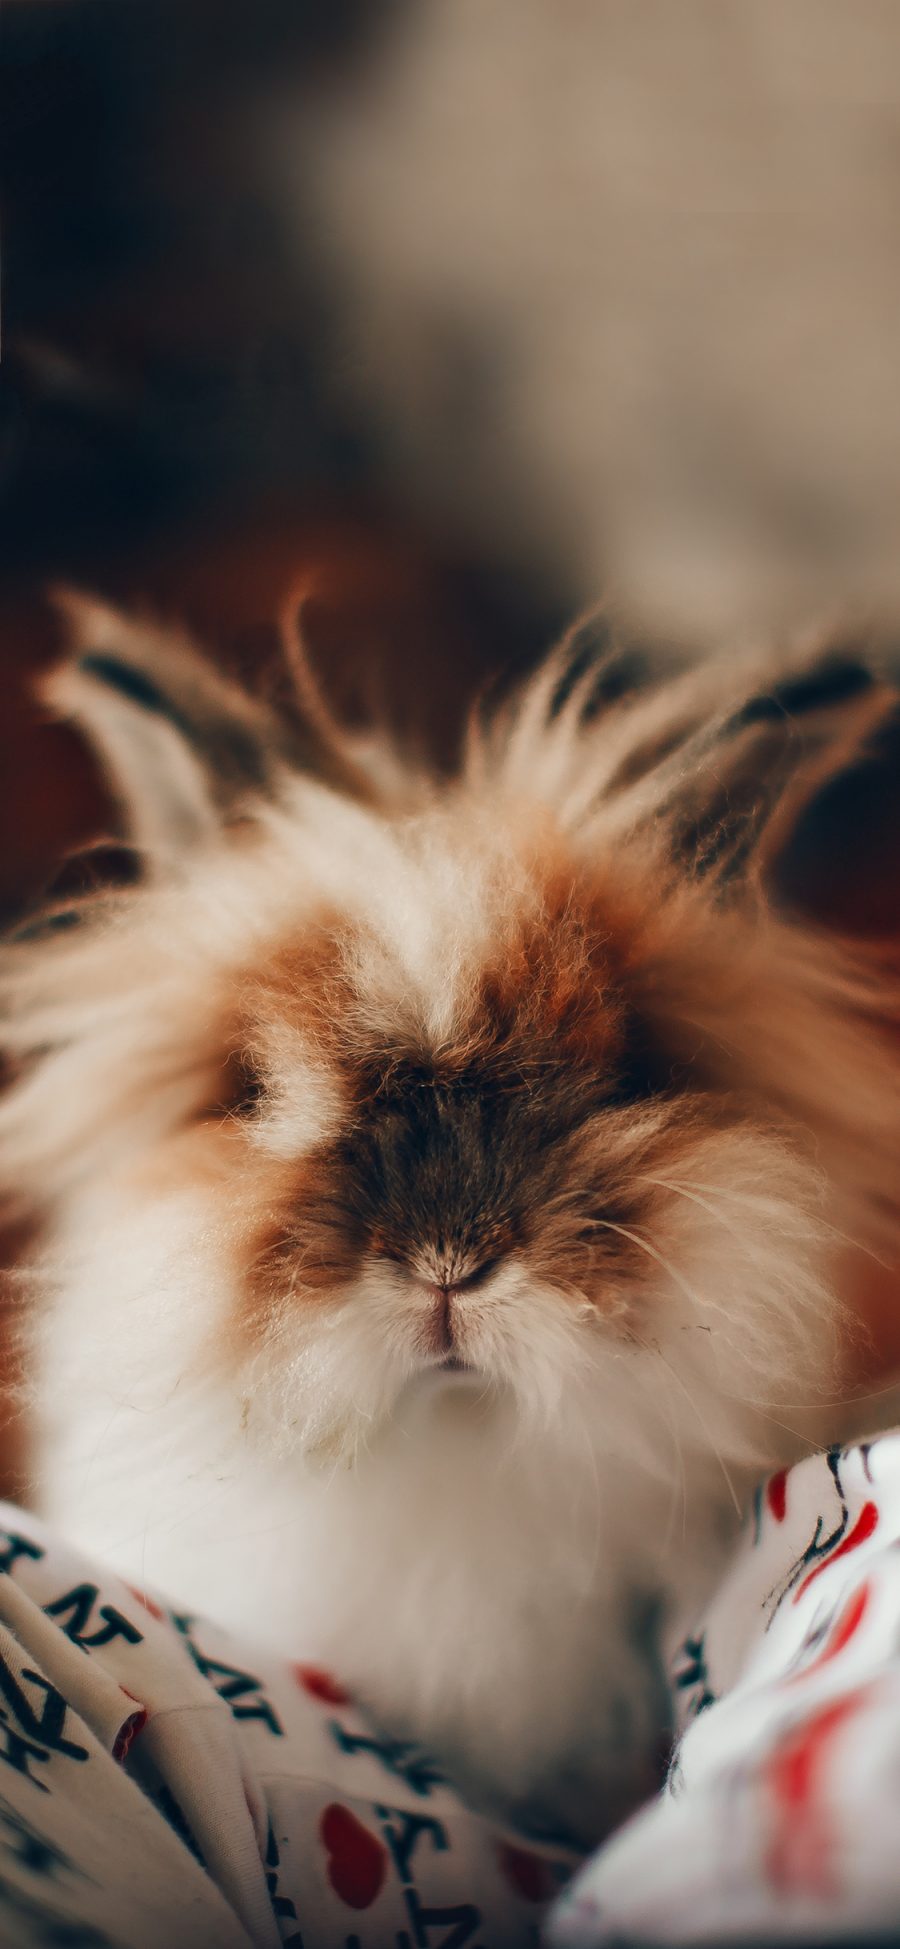 [2436×1125]宠物 小兔子 长毛兔 可爱 苹果手机壁纸图片